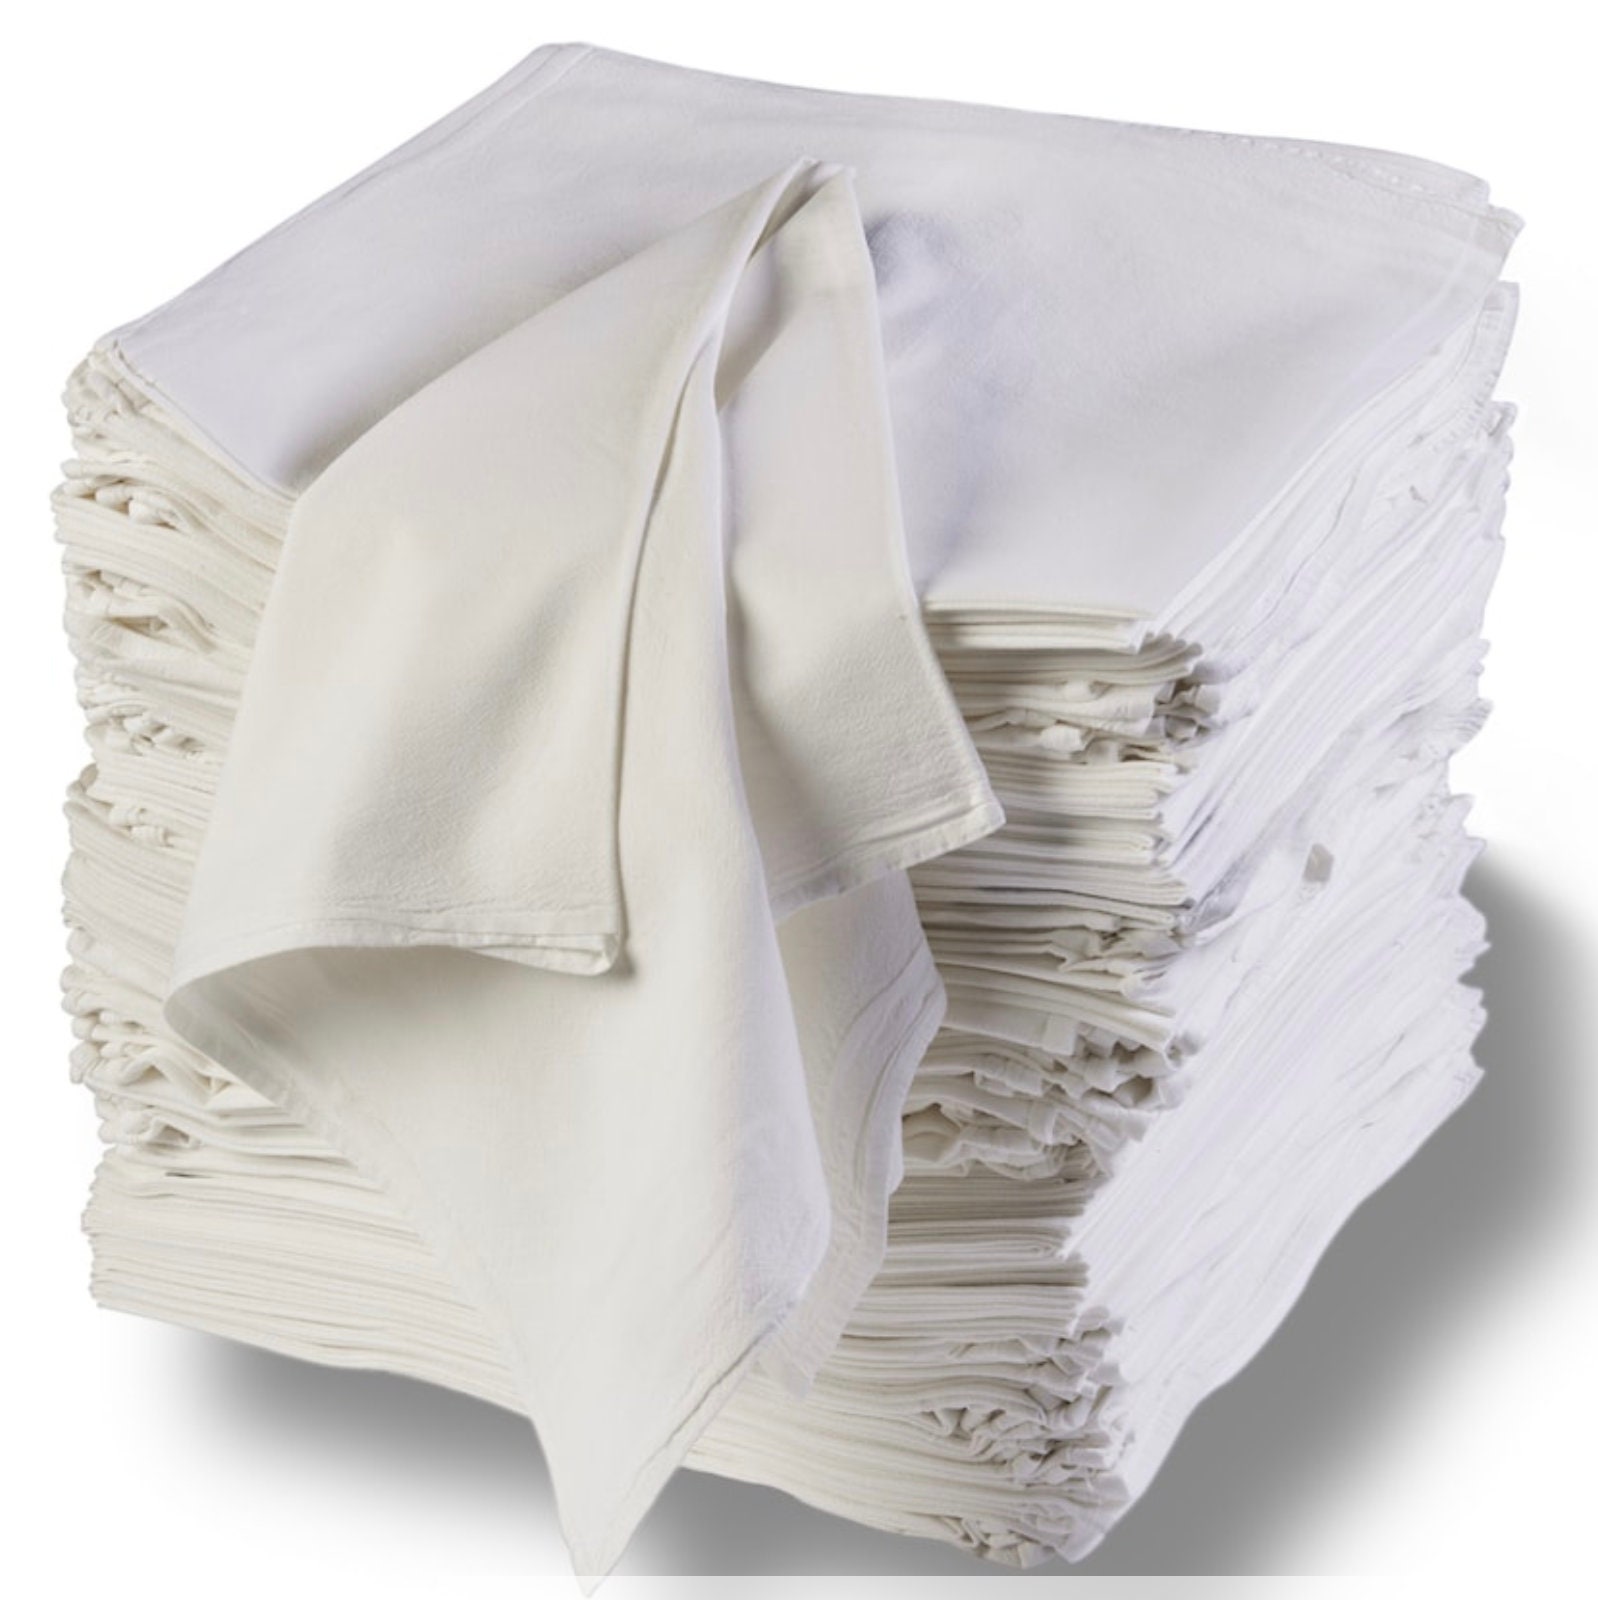 White Flour Sack Towels 27 x 27 - 12-PK Free Shipping